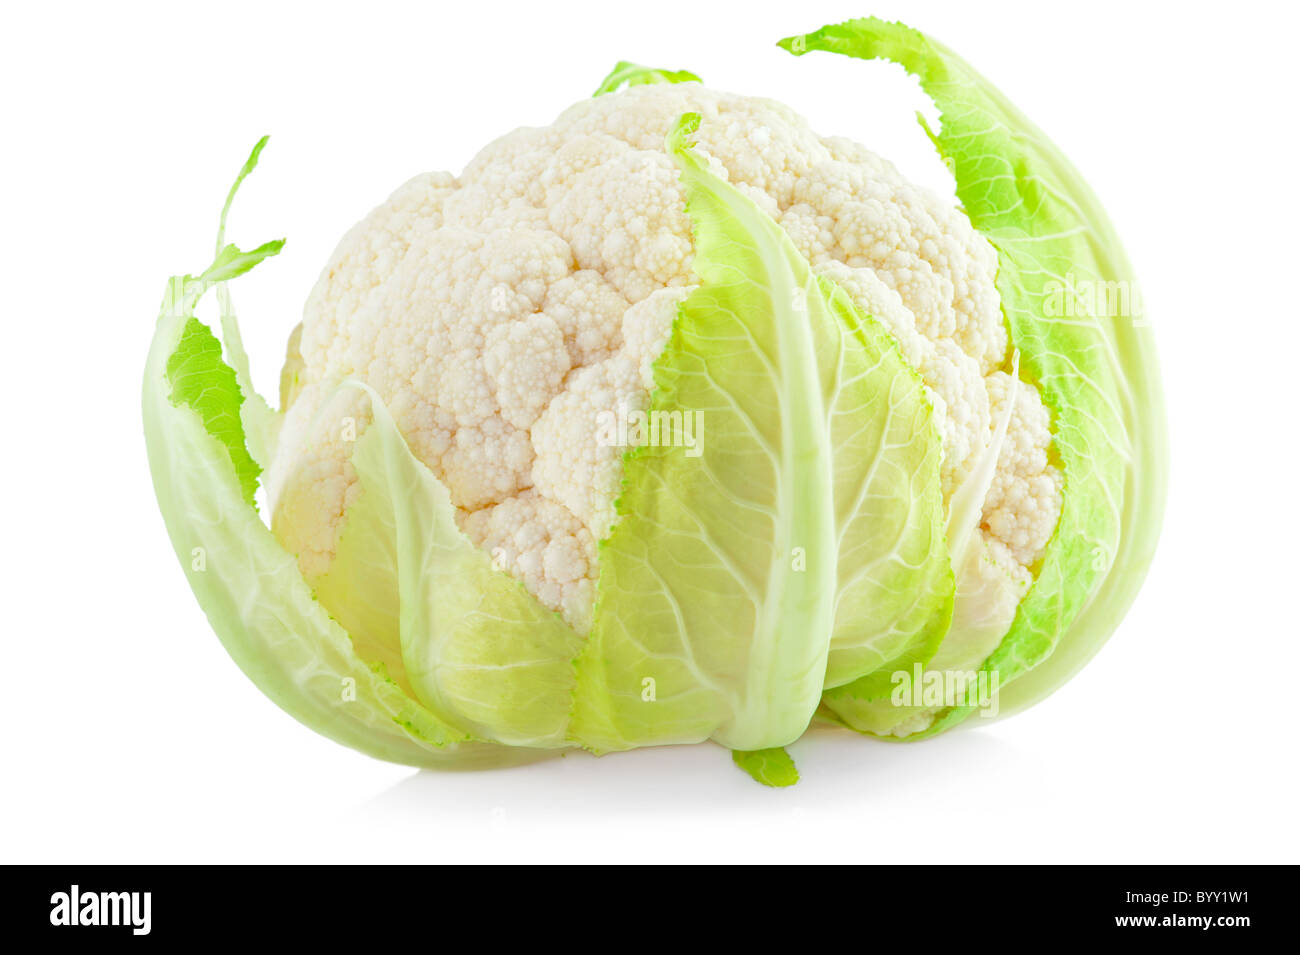 Cauliflower cabbage isolated on white background Stock Photo